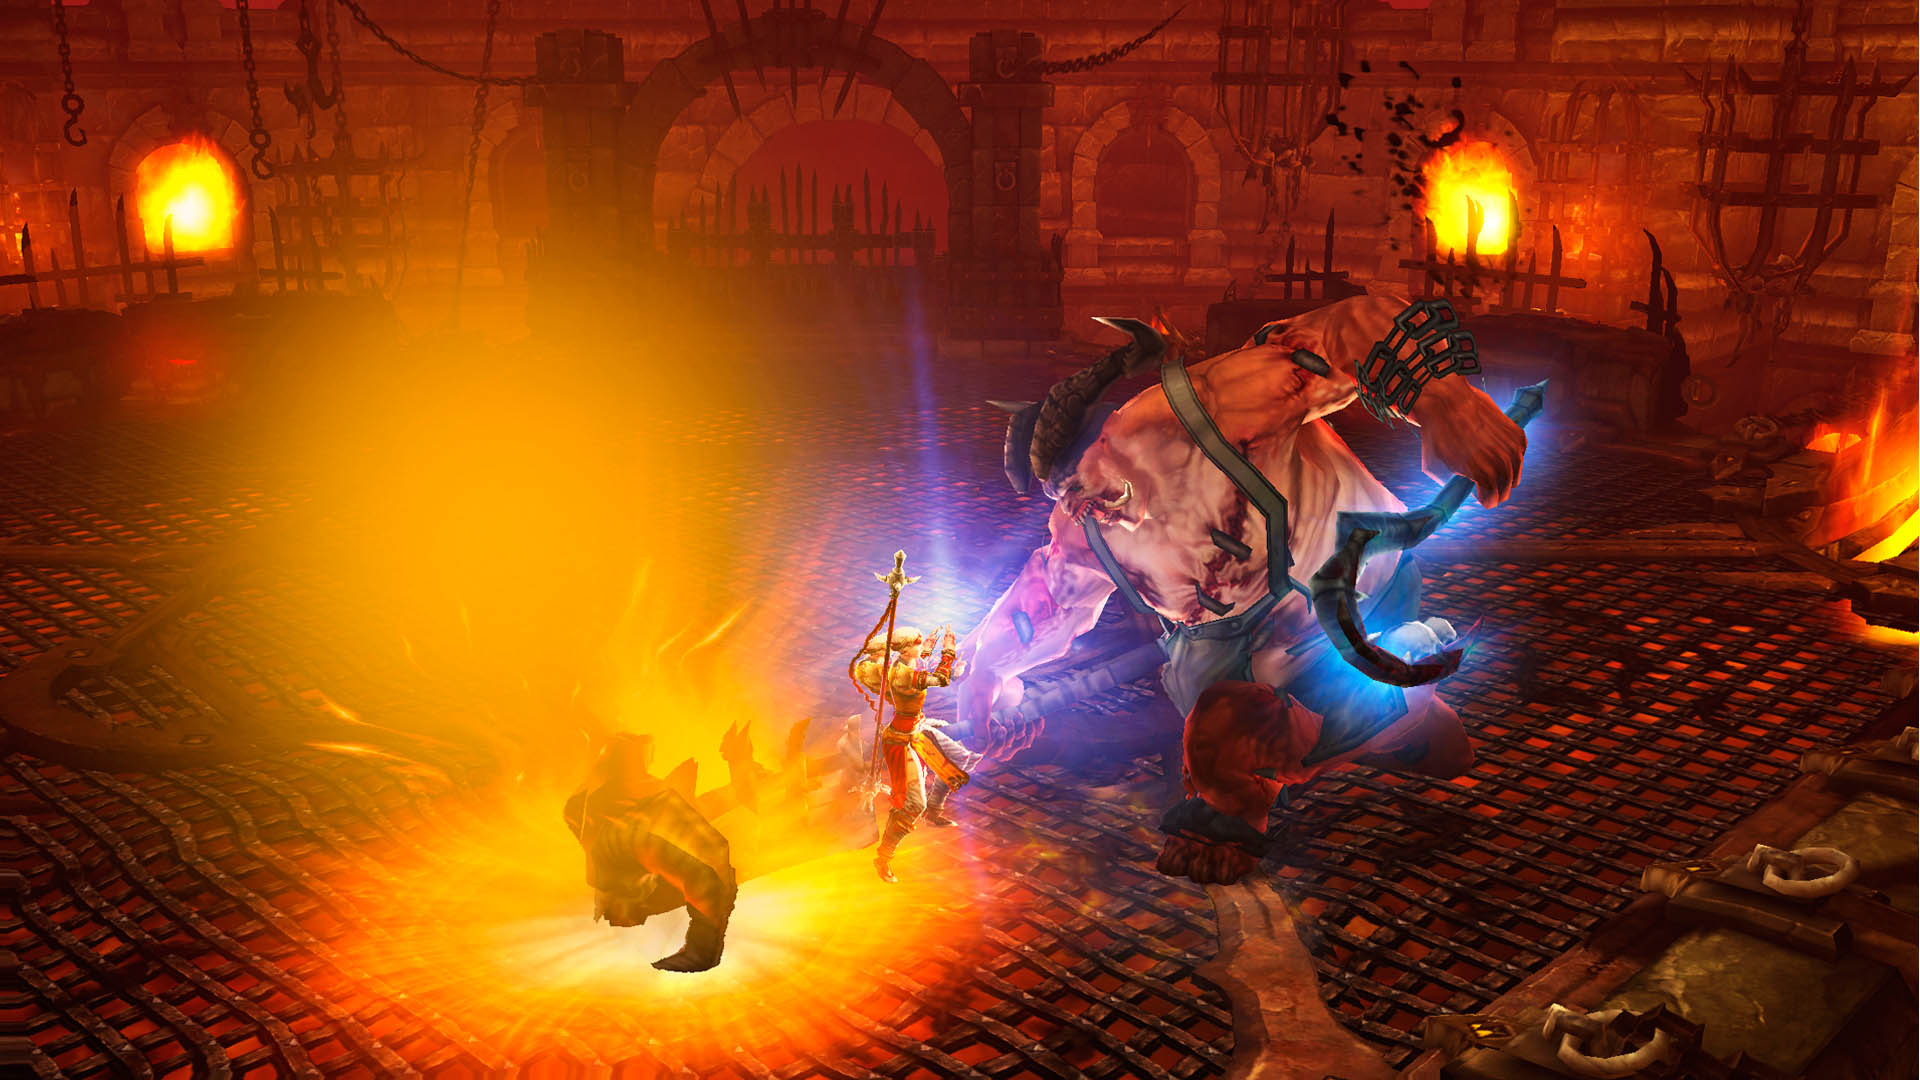 Скриншот ✅ Diablo III: Eternal Collection ? XBOX ONE X|S Ключ?